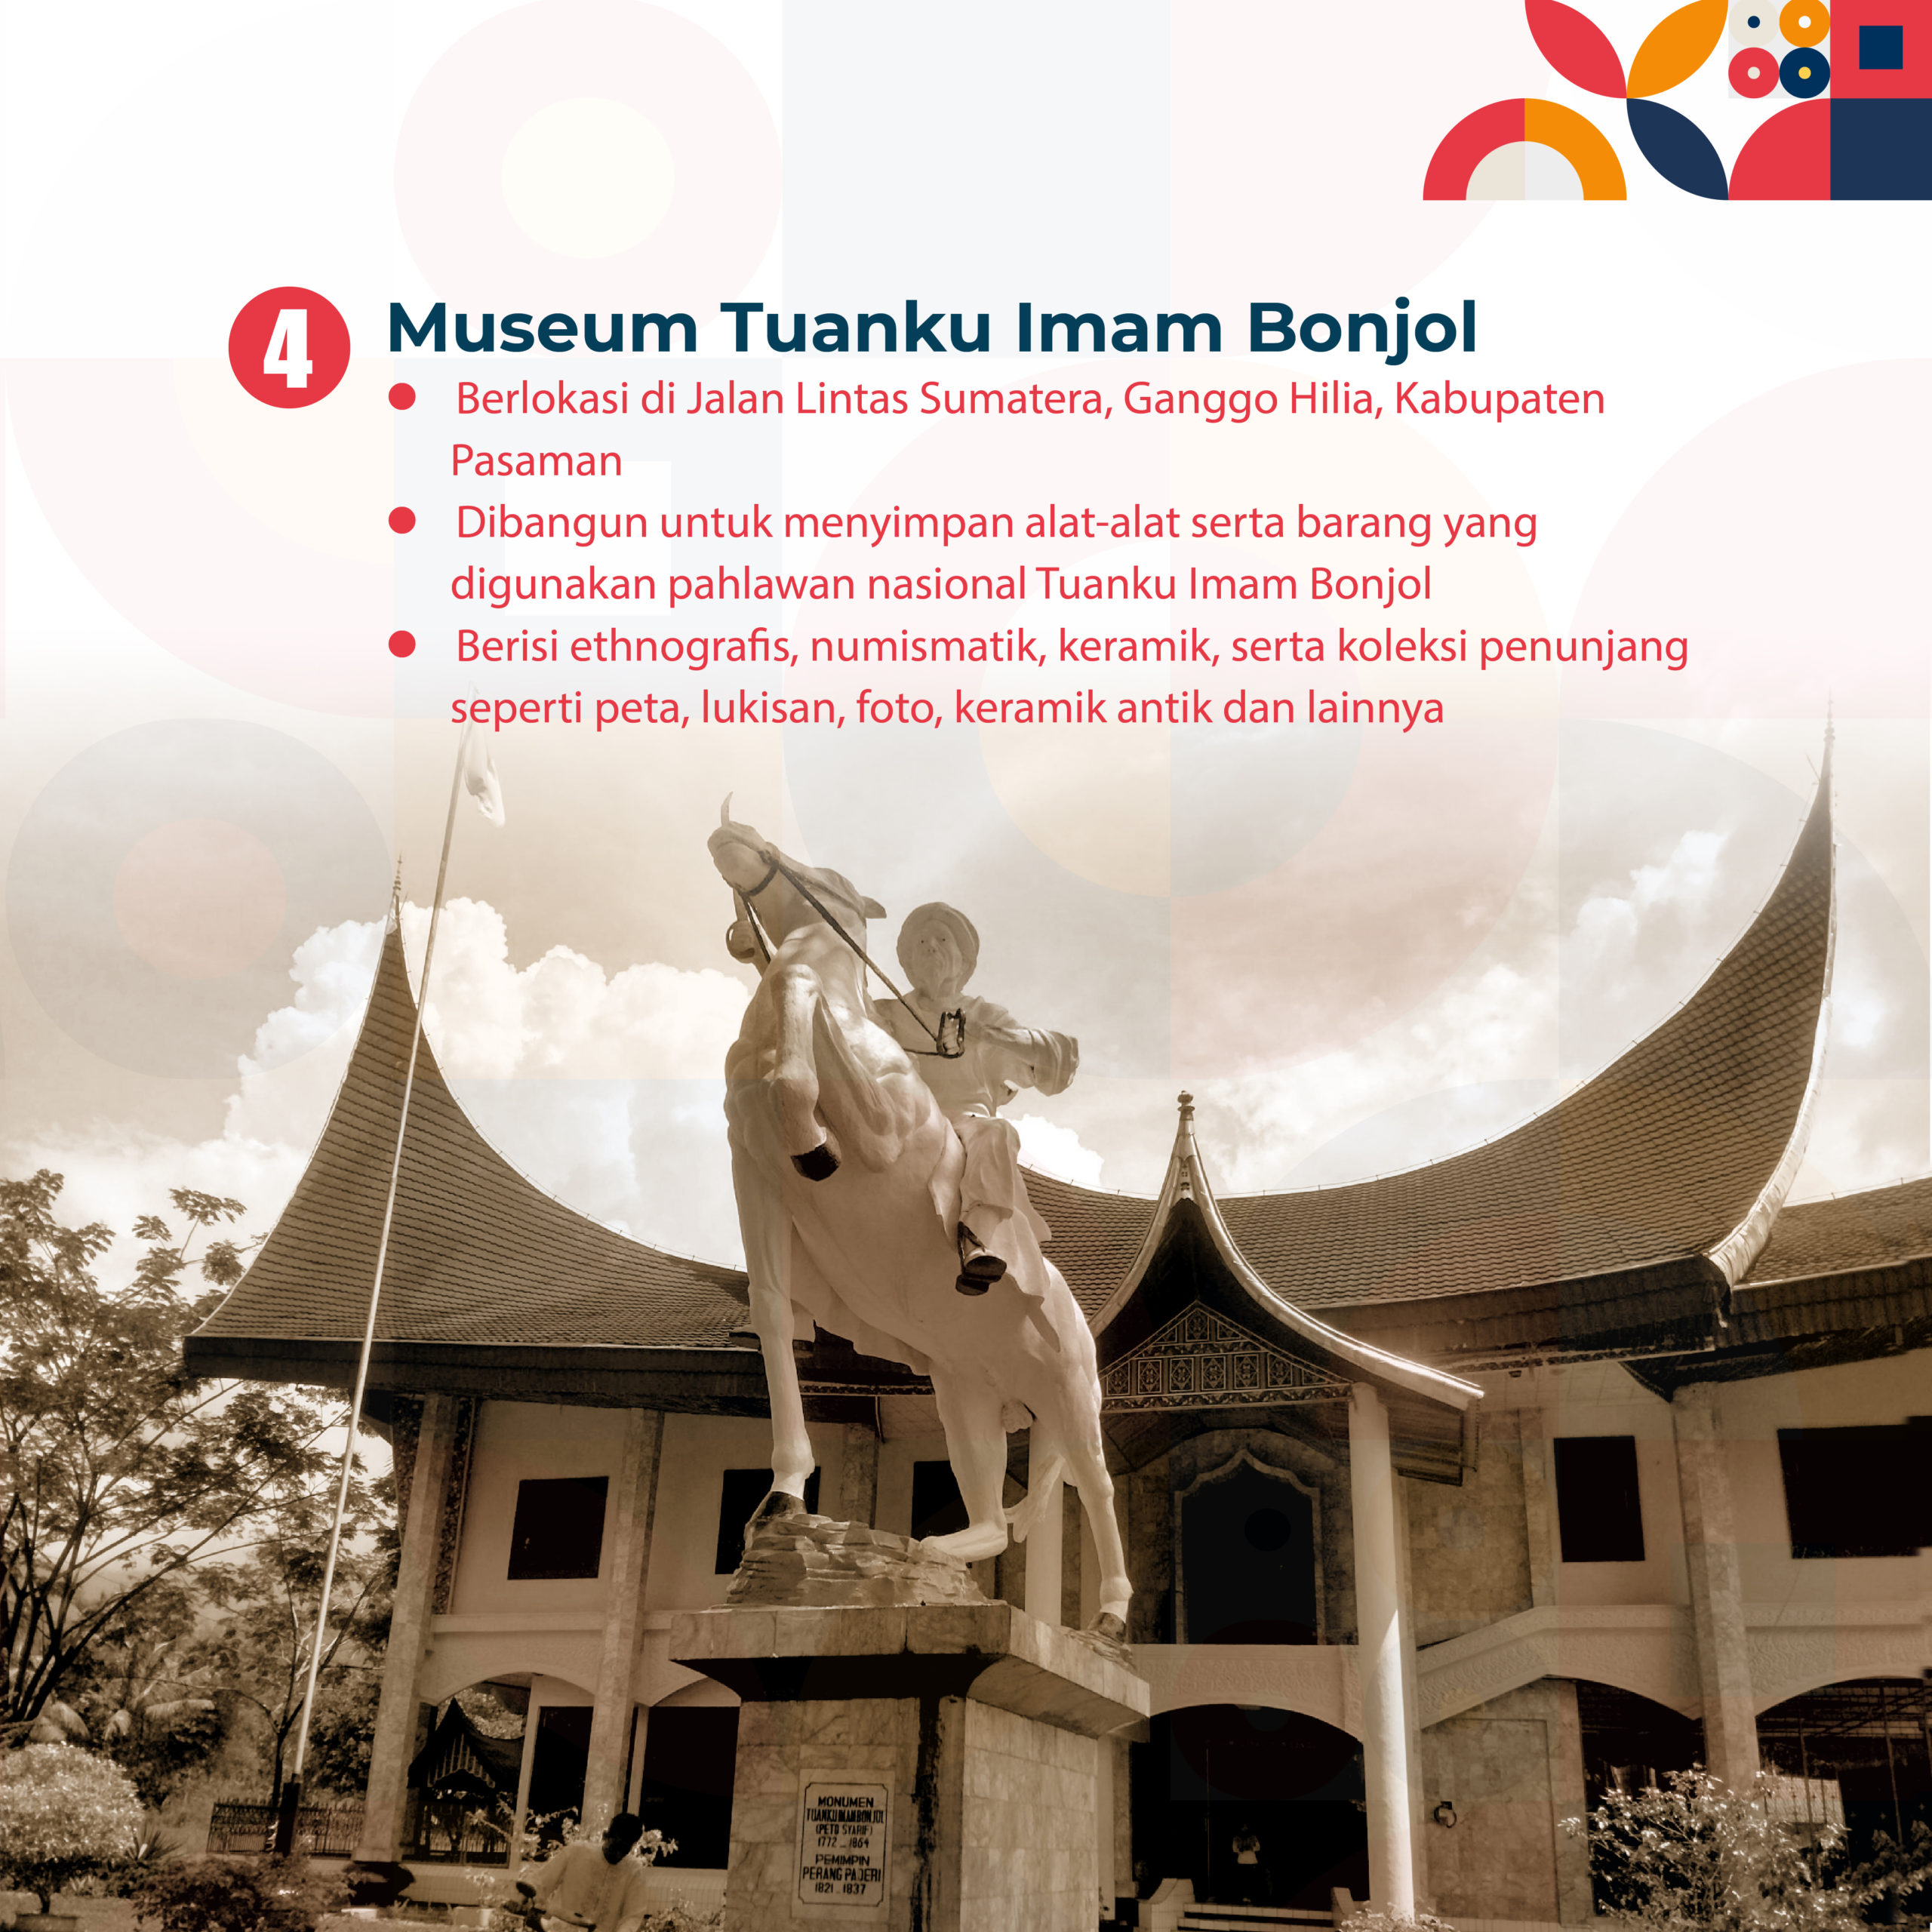 10 Museum yang Dibangun Khusus untuk Kenang Pahlawan Indonesia